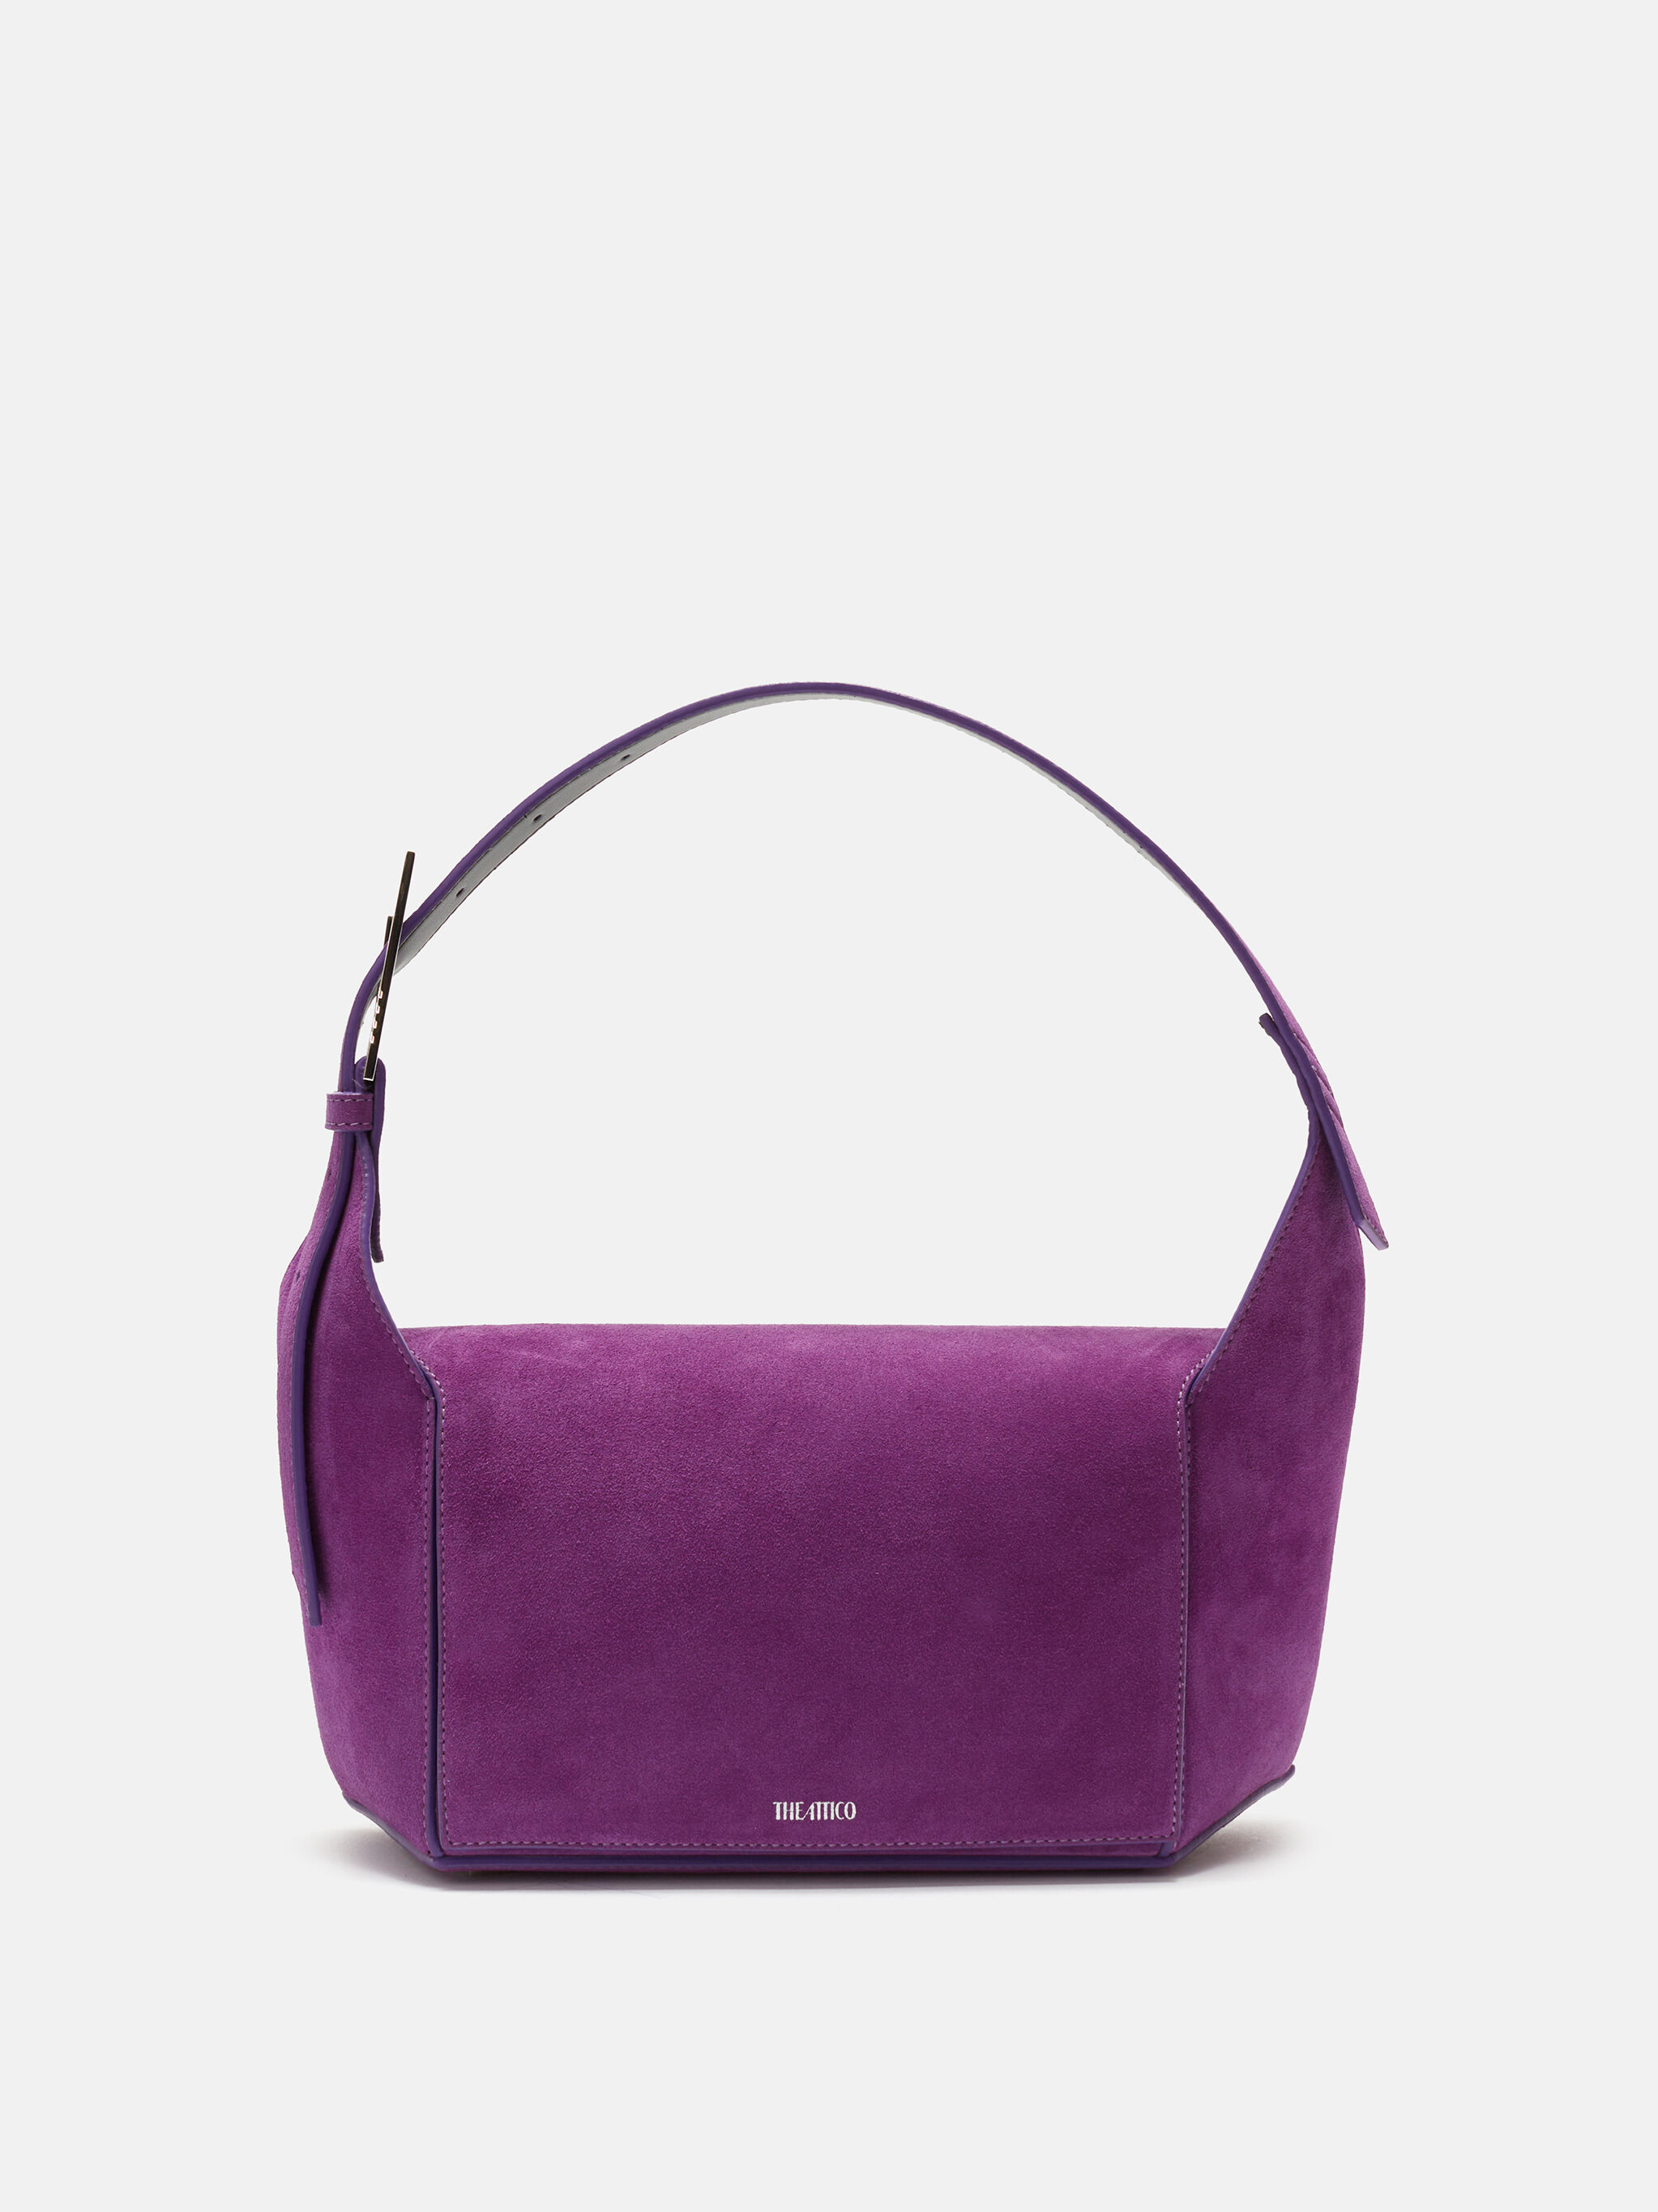 Gucci Diana mini crocodile bag in purple | GUCCI® US